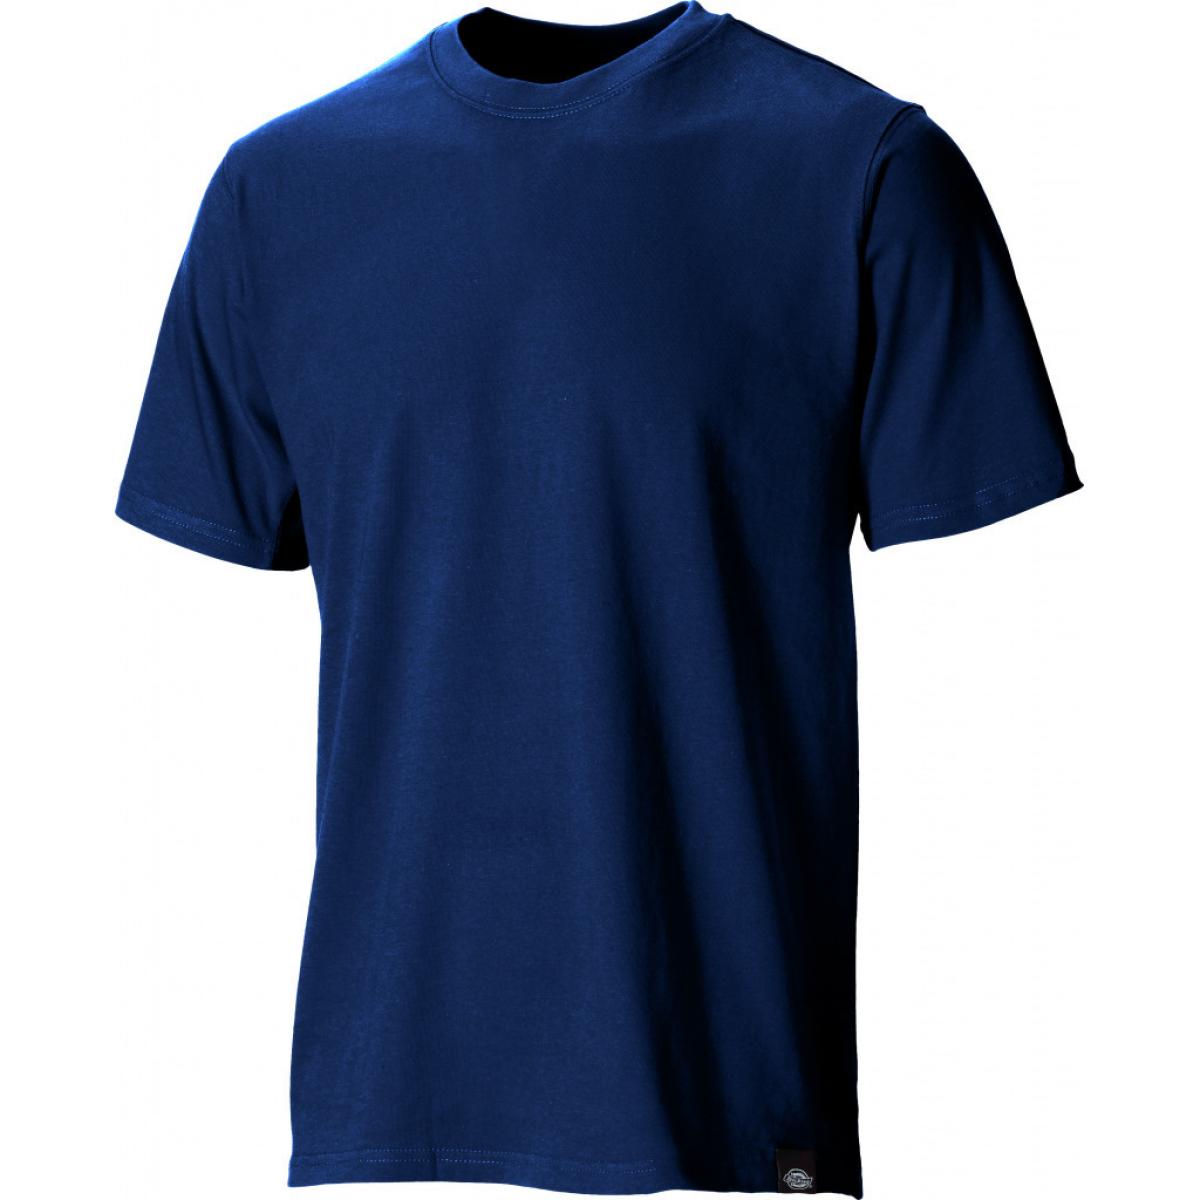 Hersteller: Dickies Herstellernummer: SH34225 Artikelbezeichnung: T-Shirt Farbe: Marineblau